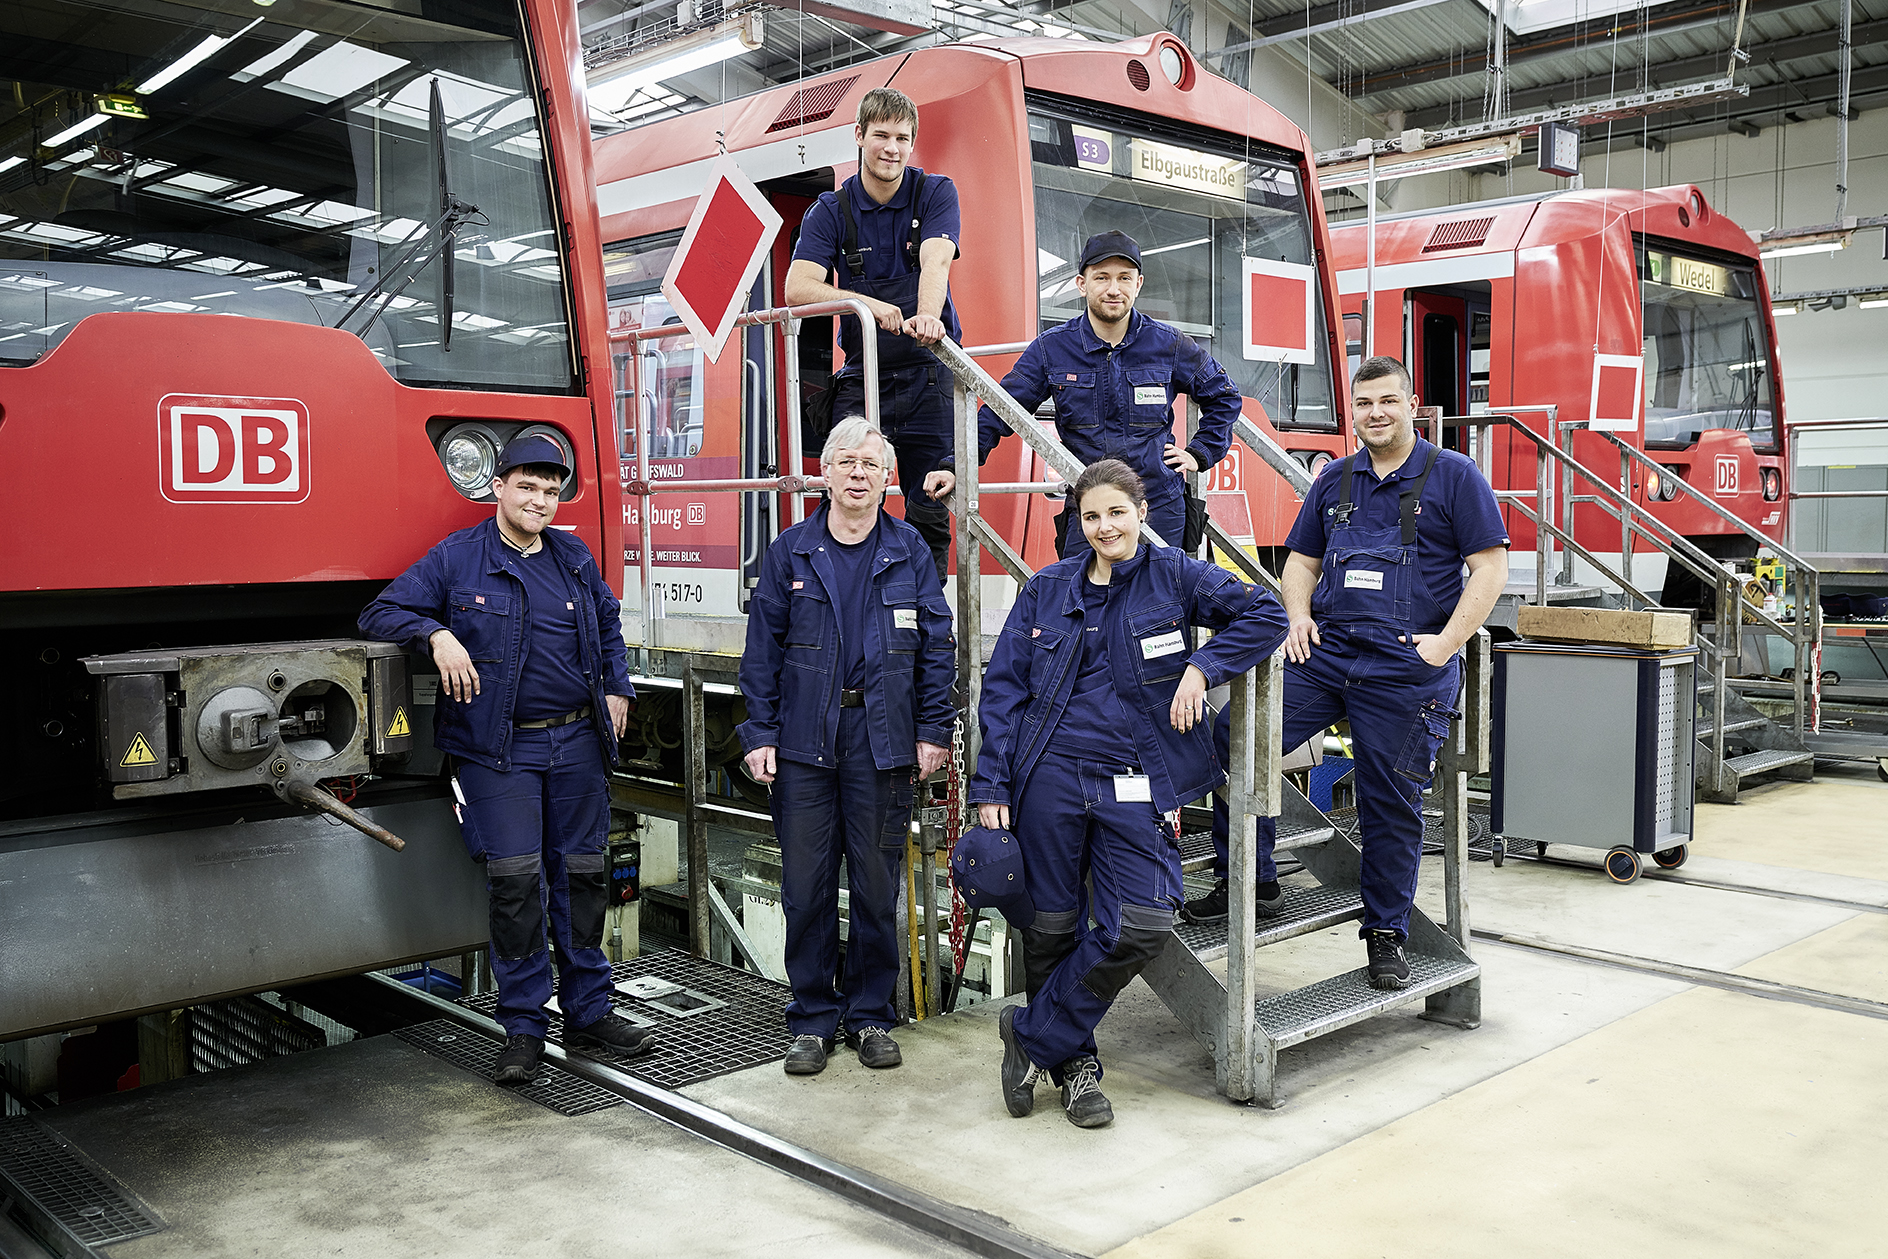 zu sehen sind Mitarbeitende der Deutschen Bahn vor roten Lokomotiven